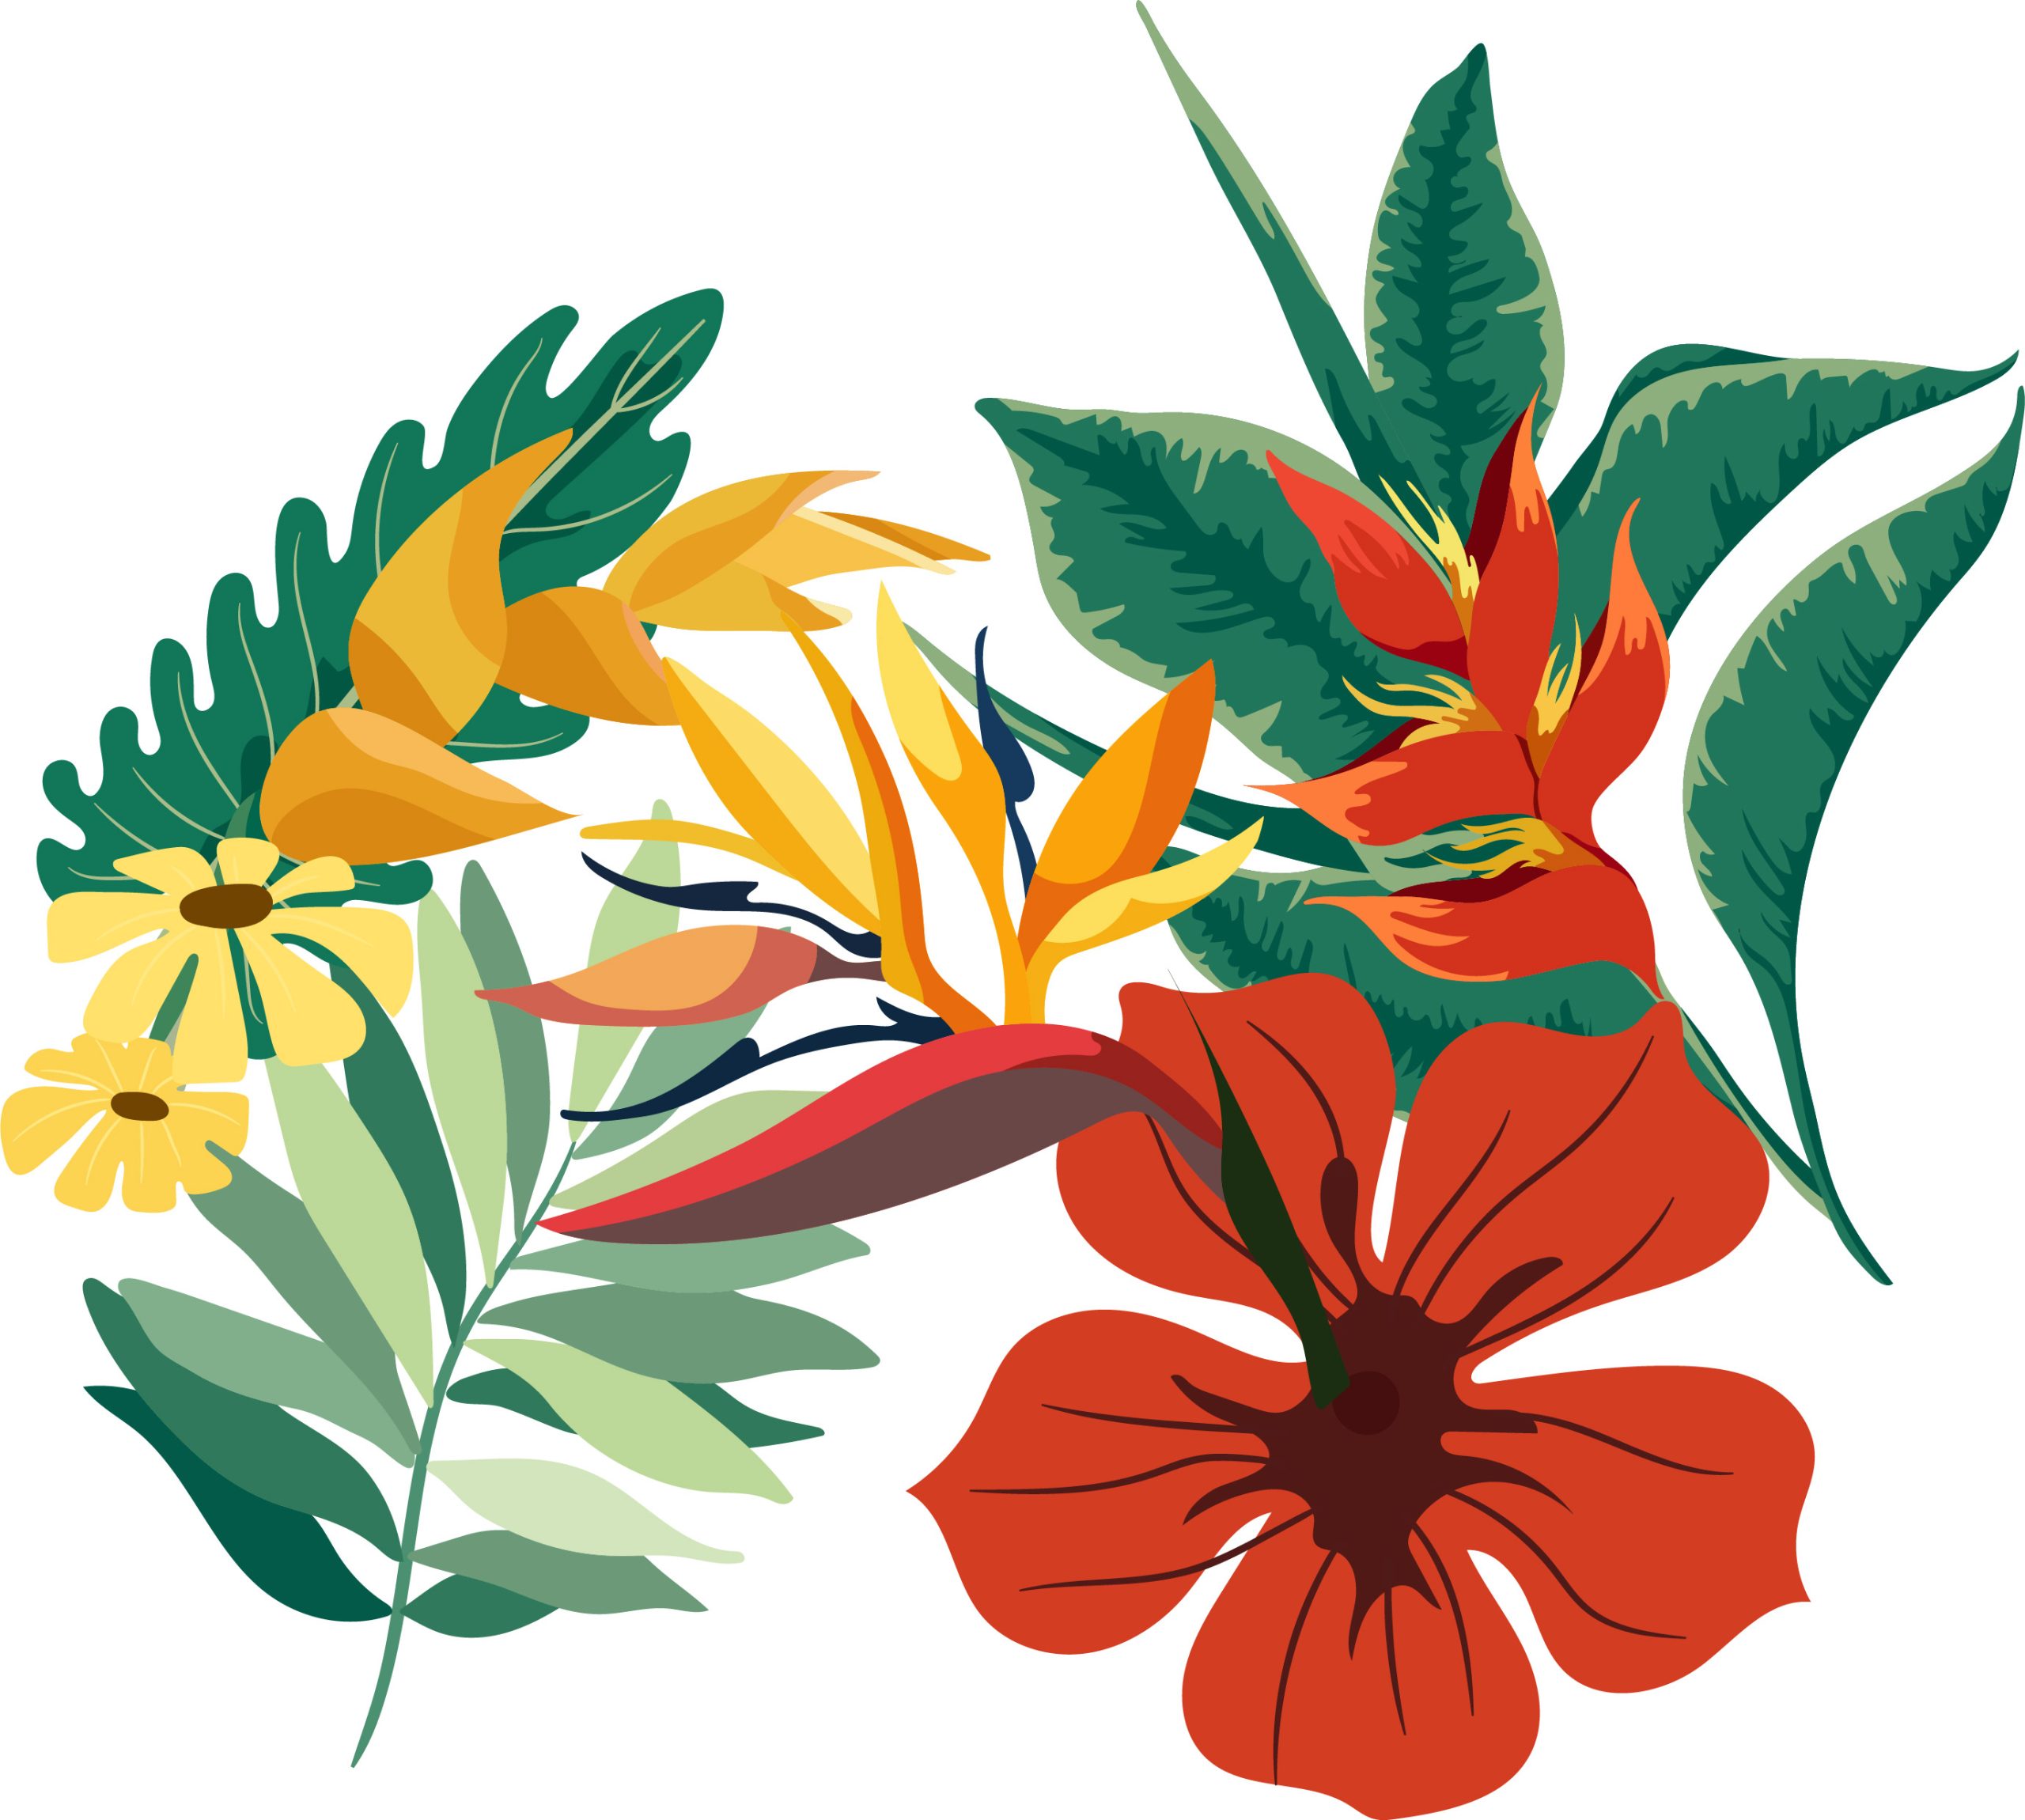 Illustrazione di fiori tropicali, con colori sgargianti che ricordano mete estive